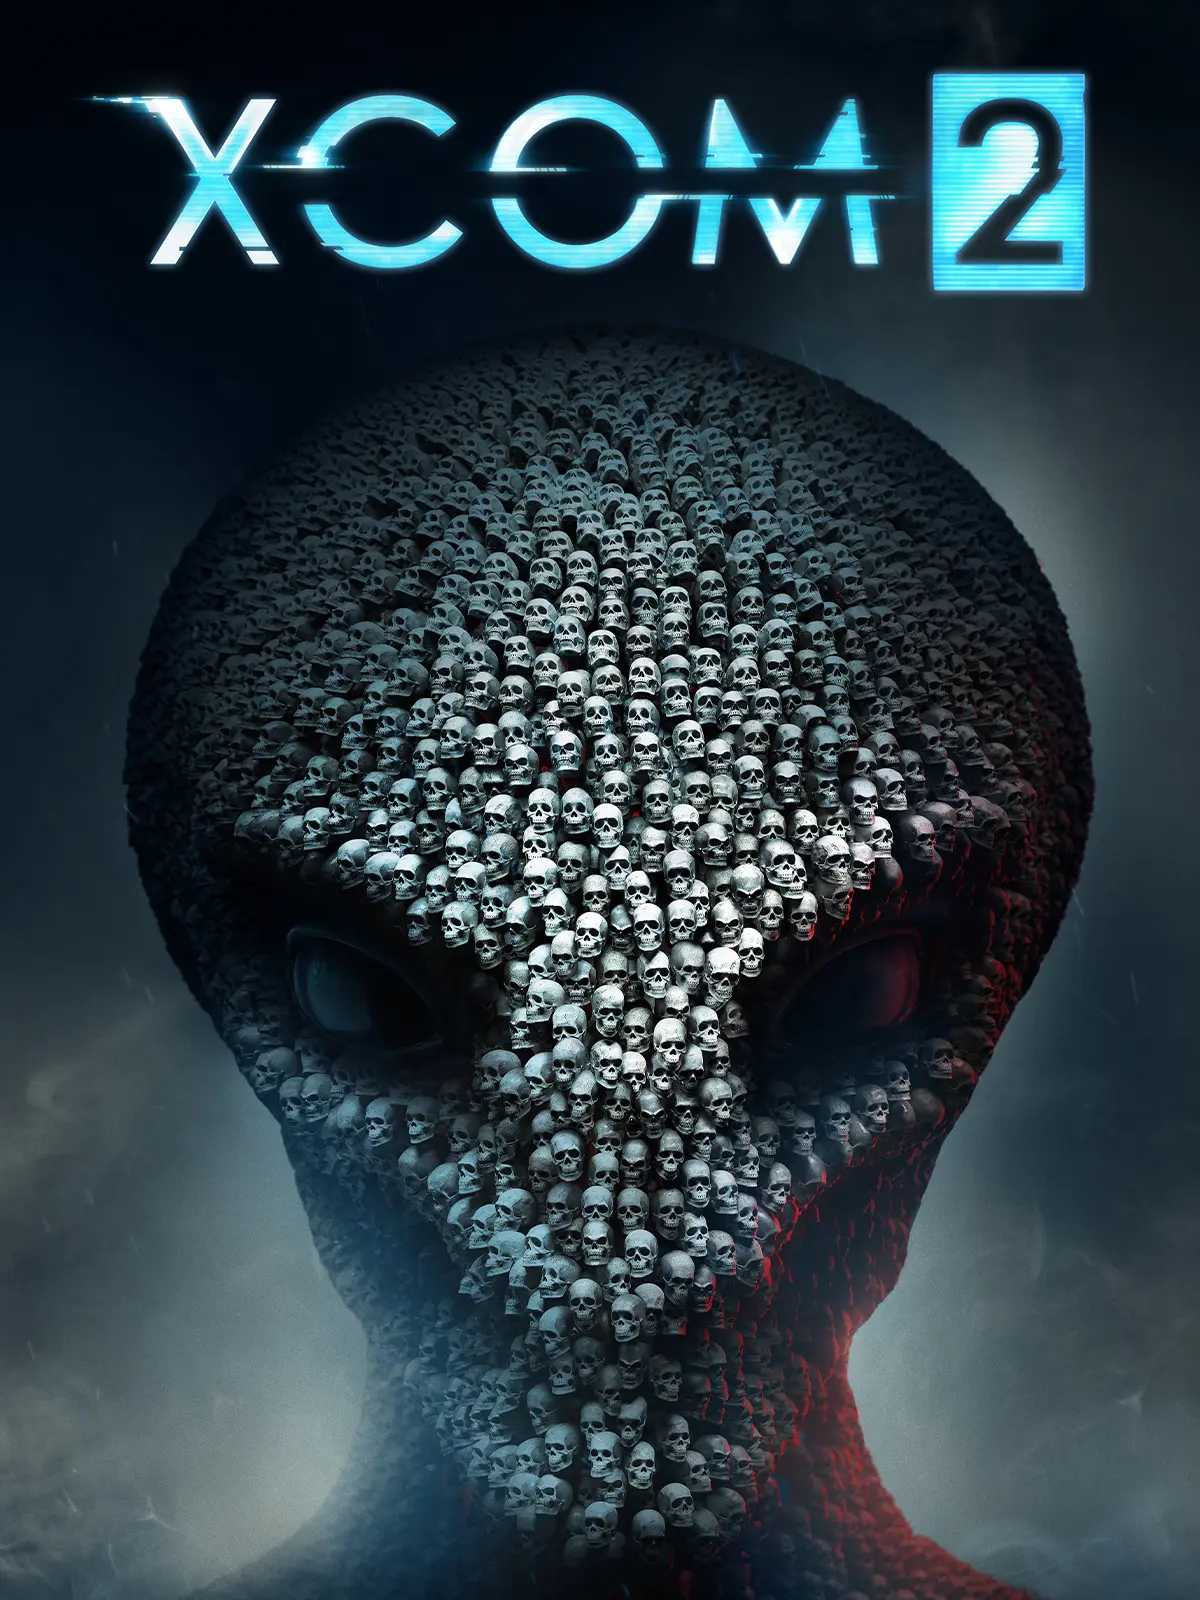 XCOM 2 Day One Edition (EU) (PC / Mac / Linux) - Steam - Digital Code